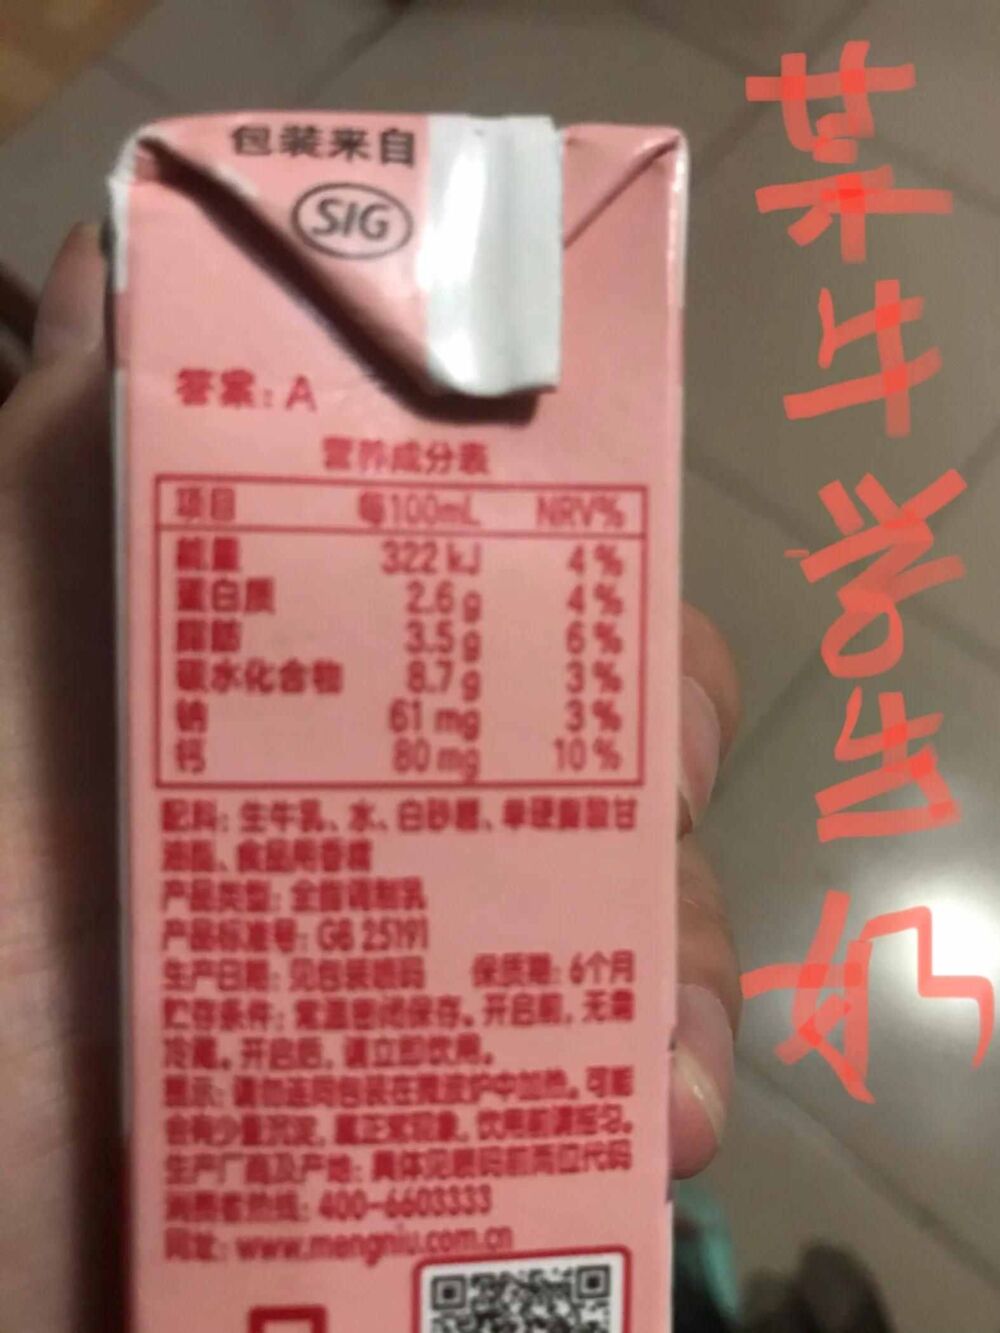 关于牛奶的营养成分表